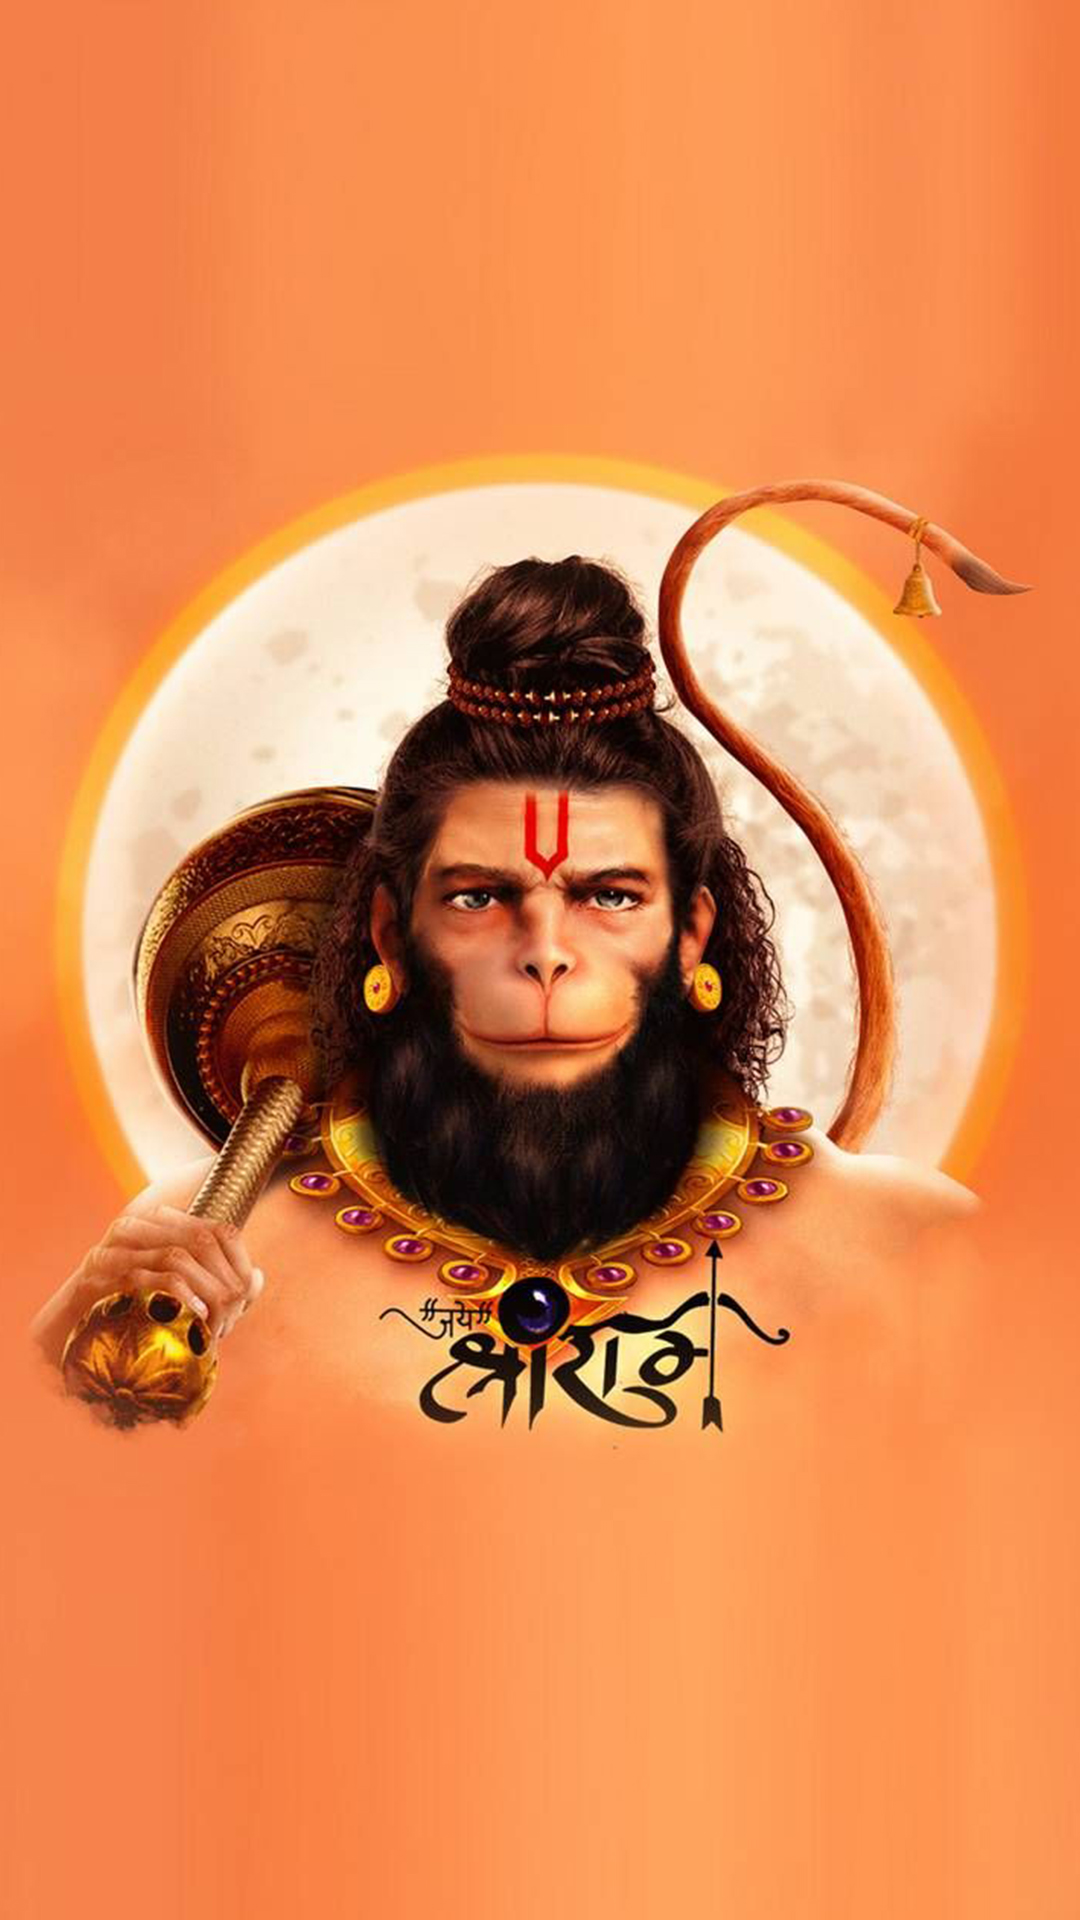 Hanuman Ji Pic Wallpapers